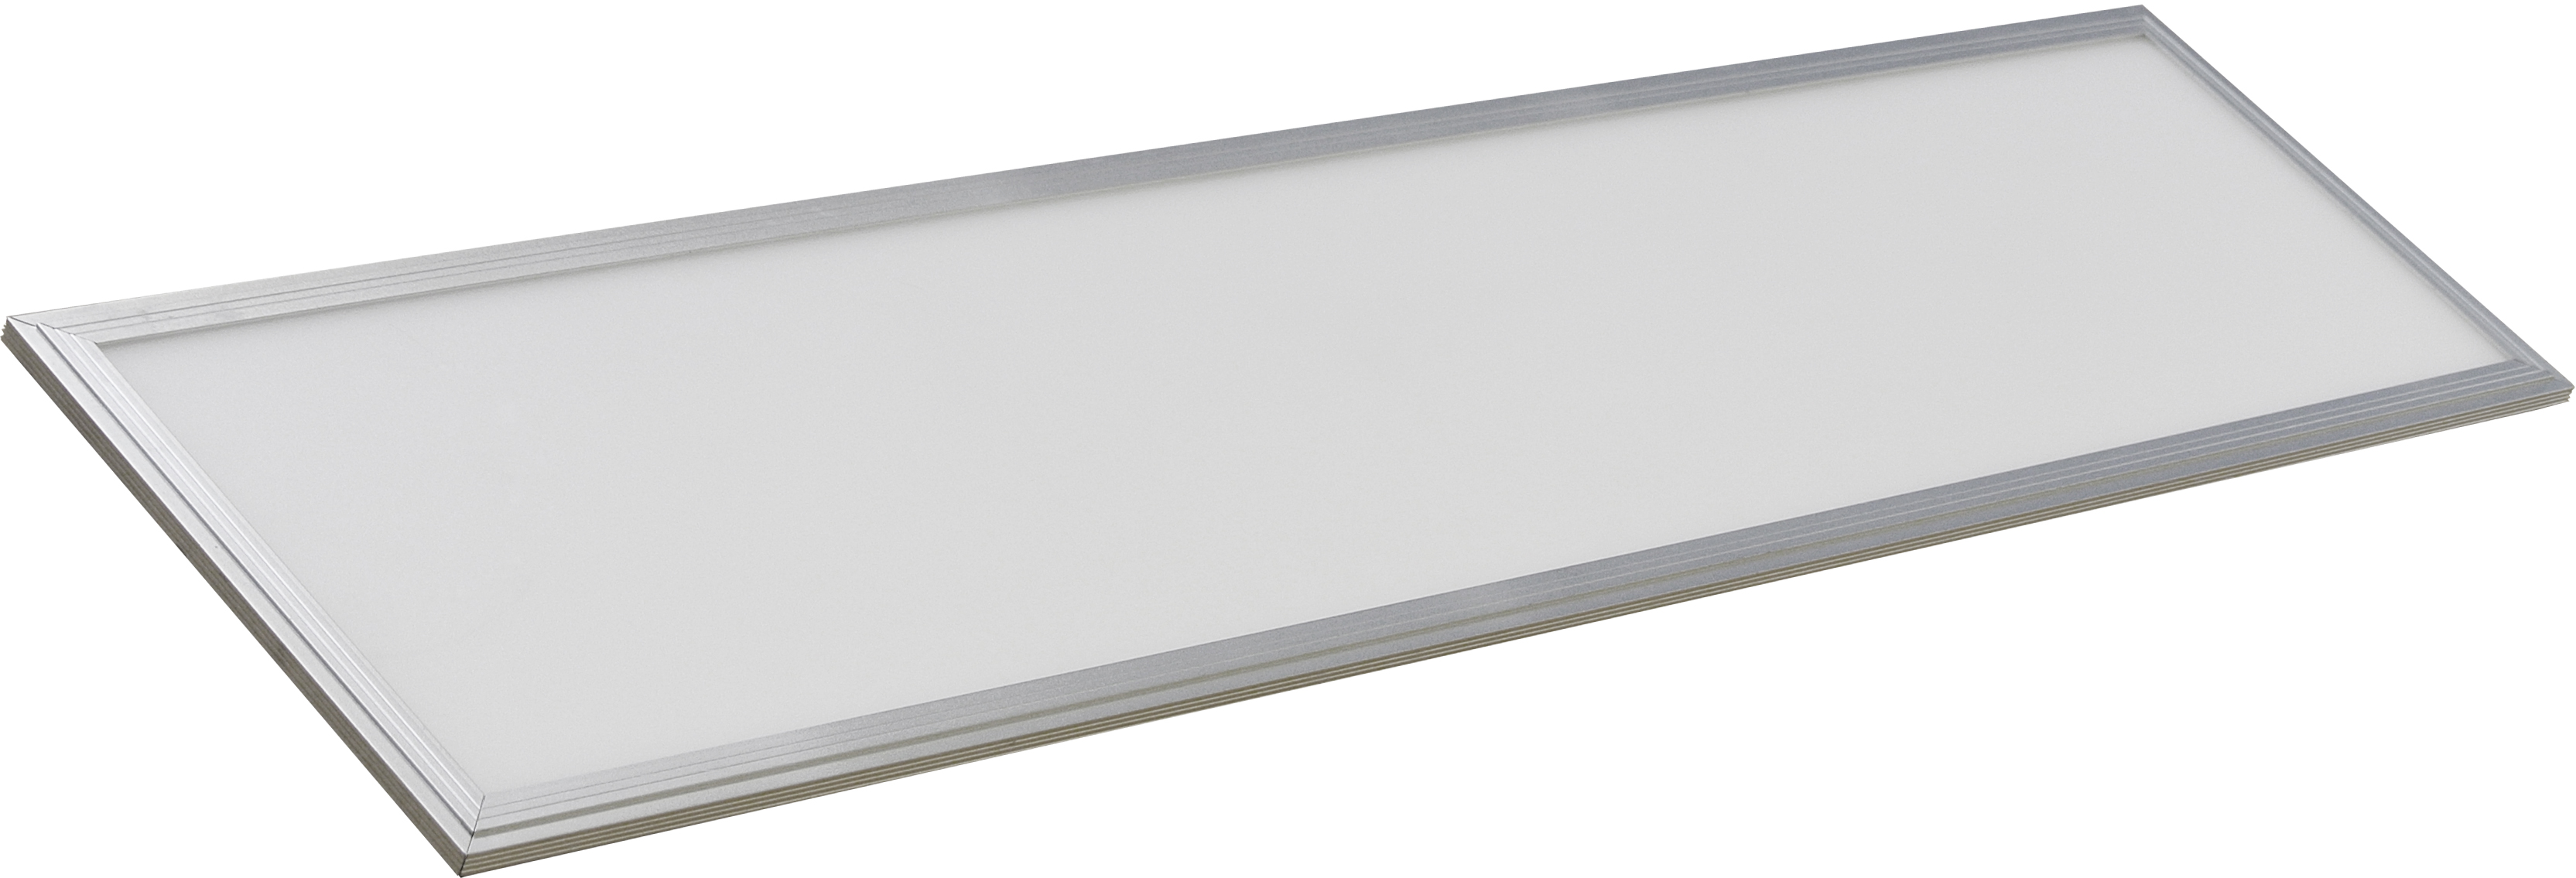 LED panel 1200x300 40W IP20, stříbrný rám, normální bílá